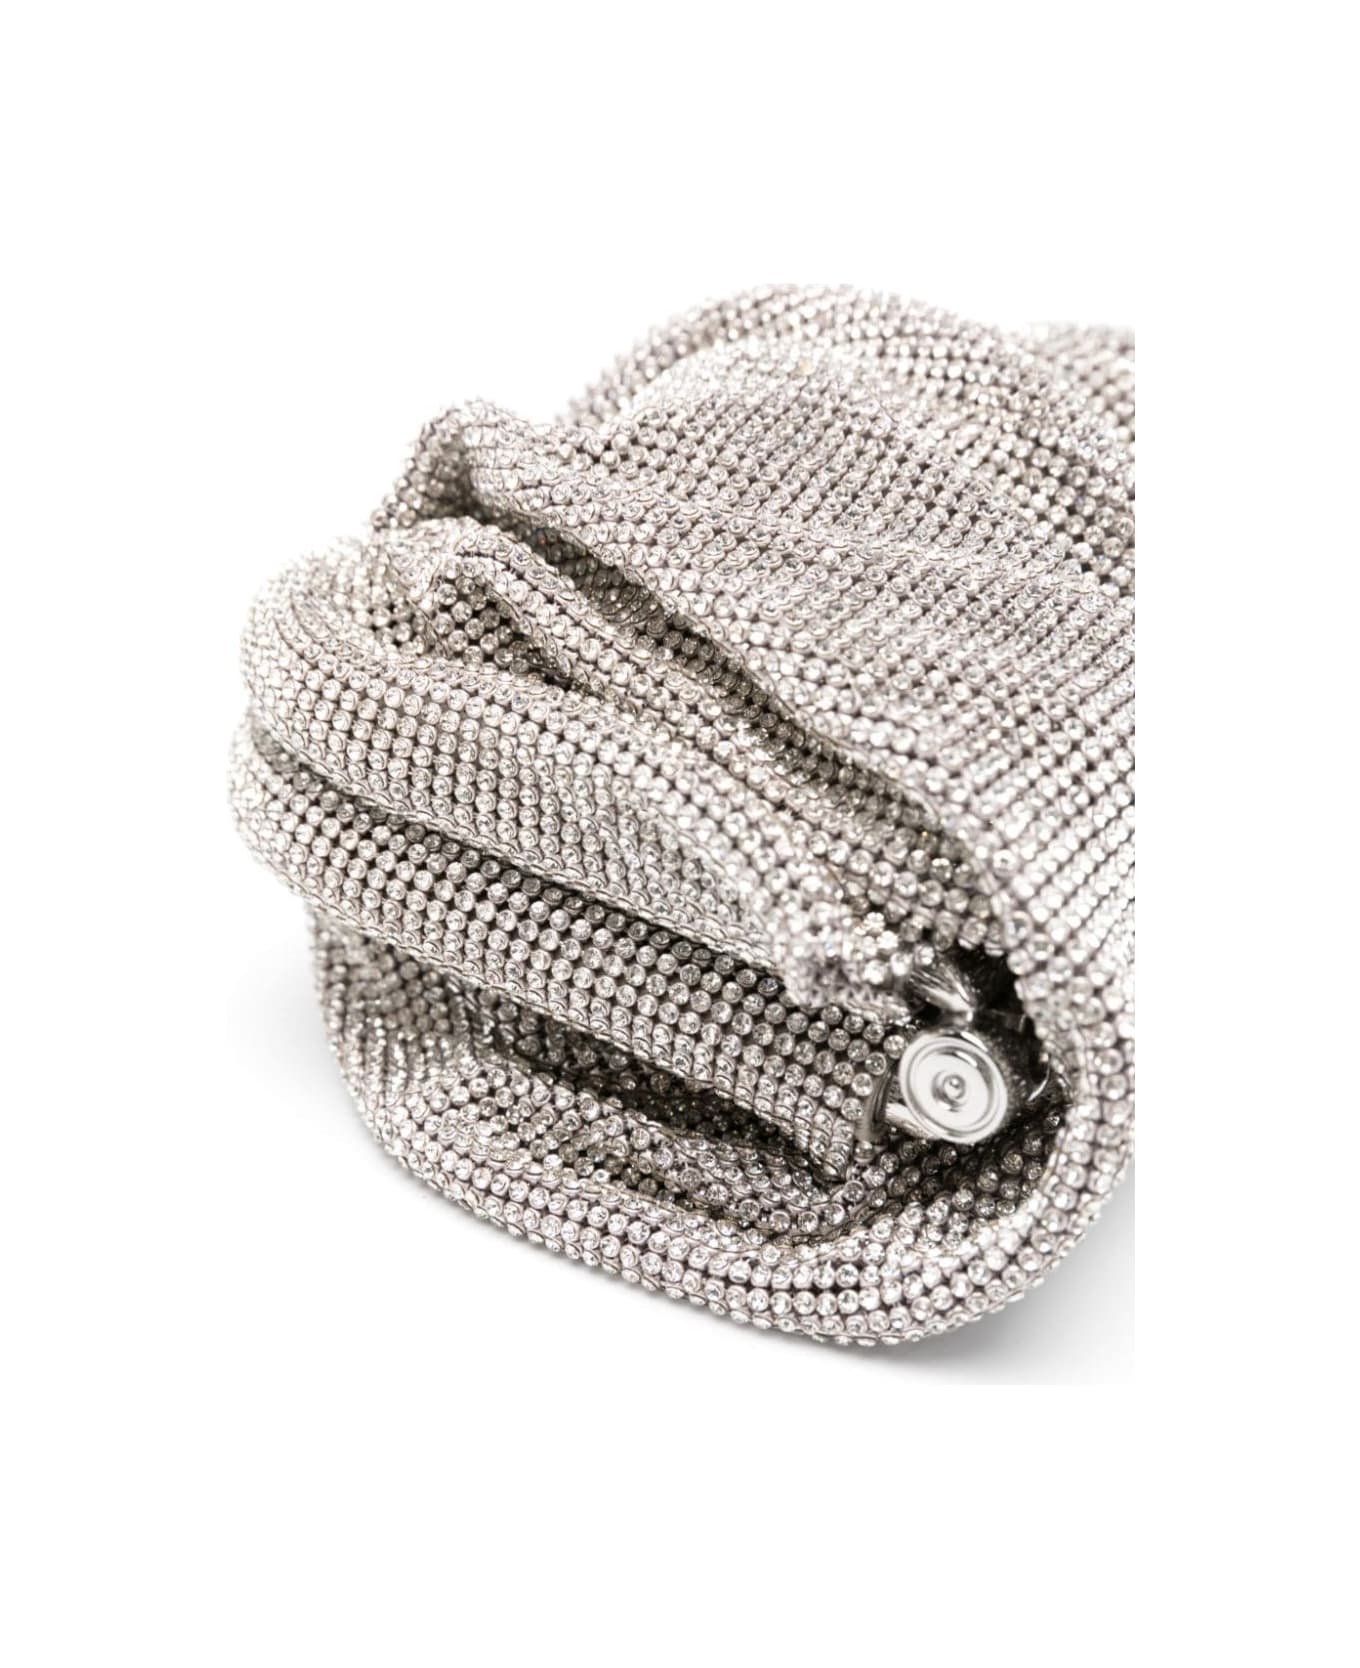 Benedetta Bruzziches 'venus La Petite' Silver Clutch Bag In Fabric With Allover Crystals Woman